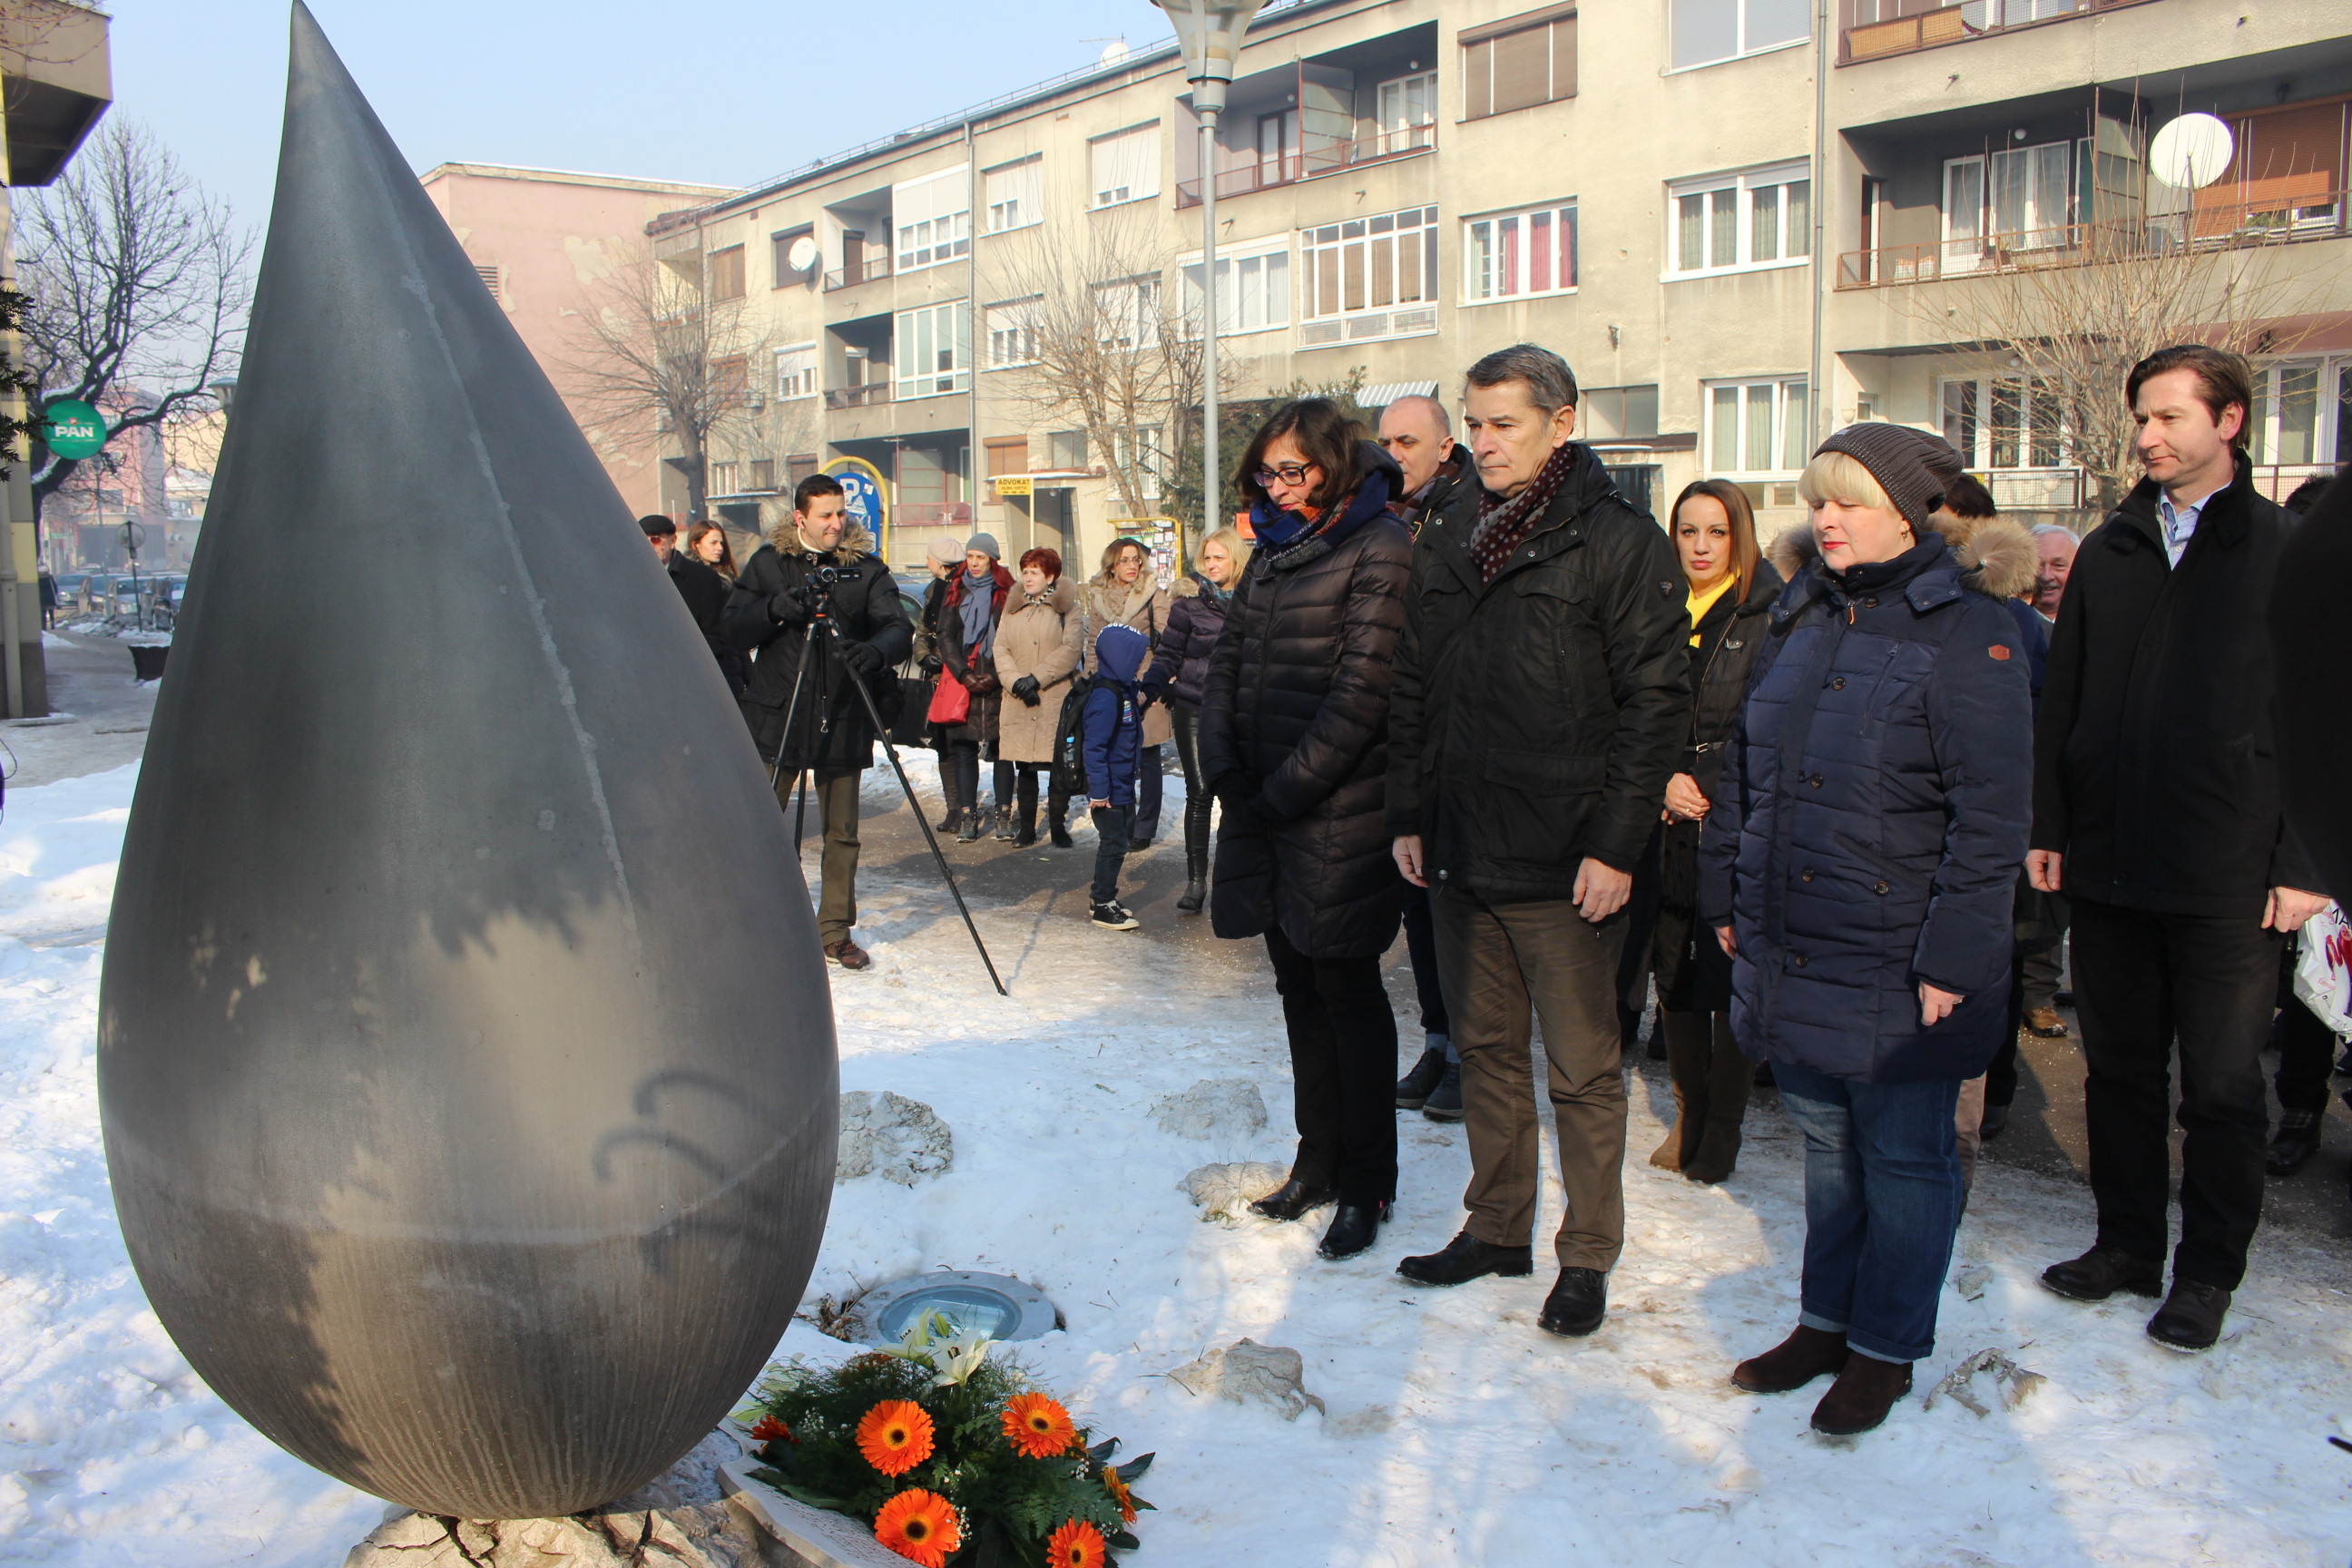 Obilježavanje Međunarodnog dana sjećanja na žrtve holokausta u Tuzli